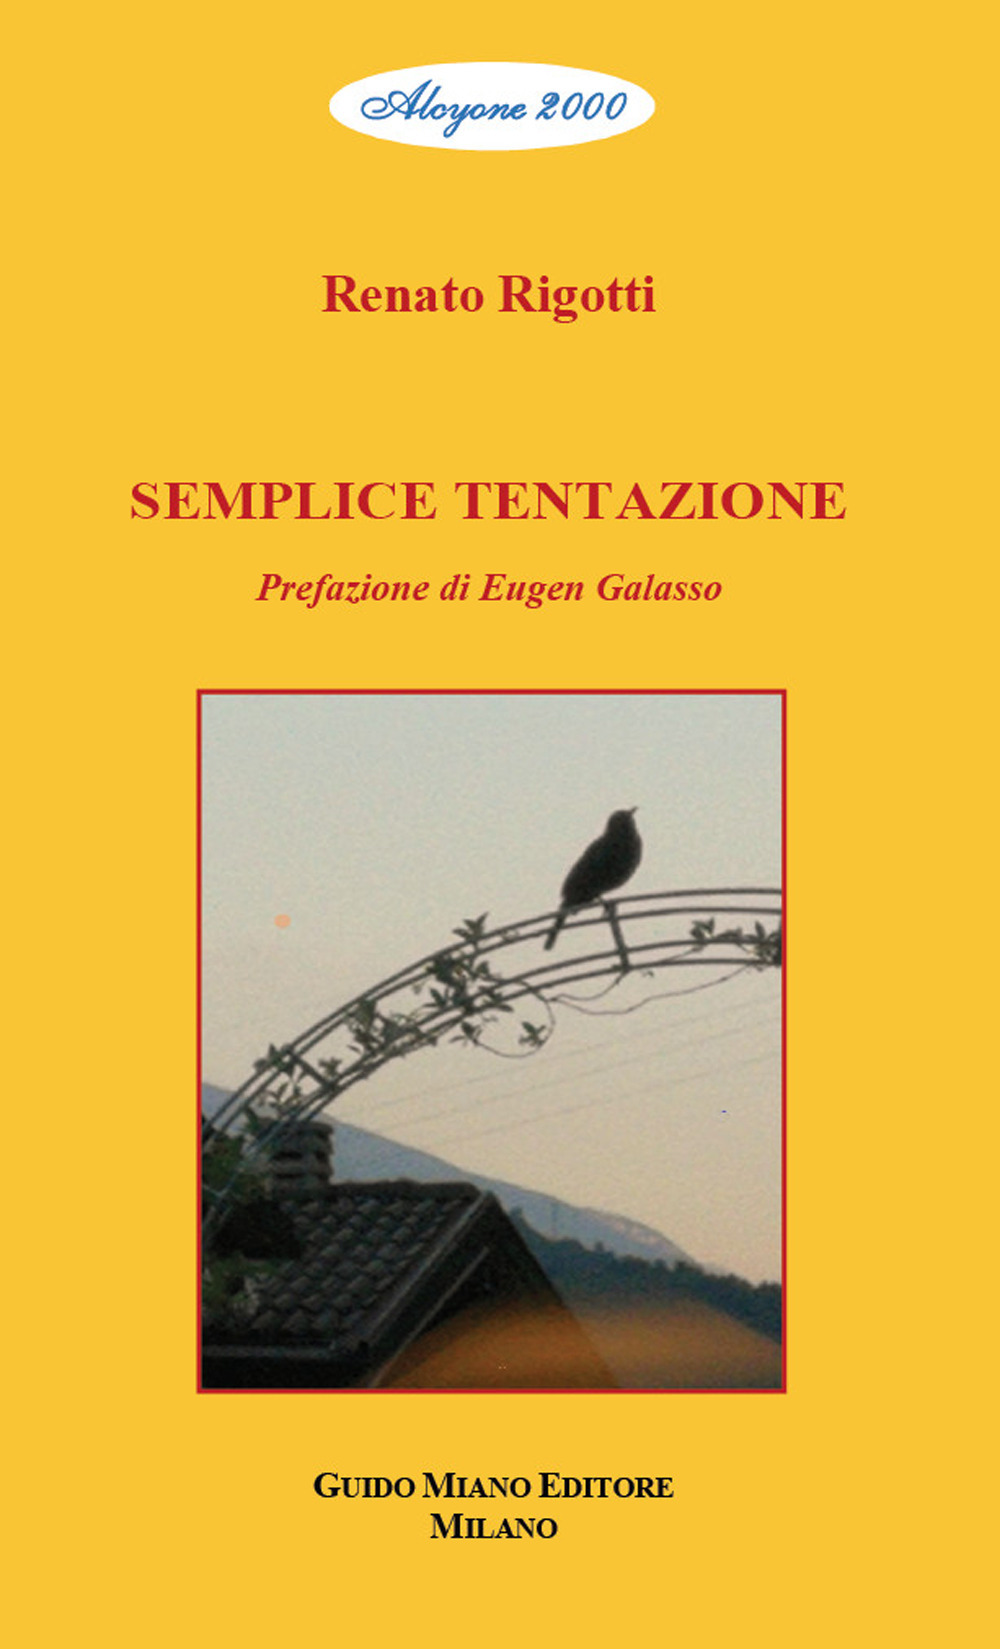 Image of Semplice tentazione. Testo in italiano e trentino